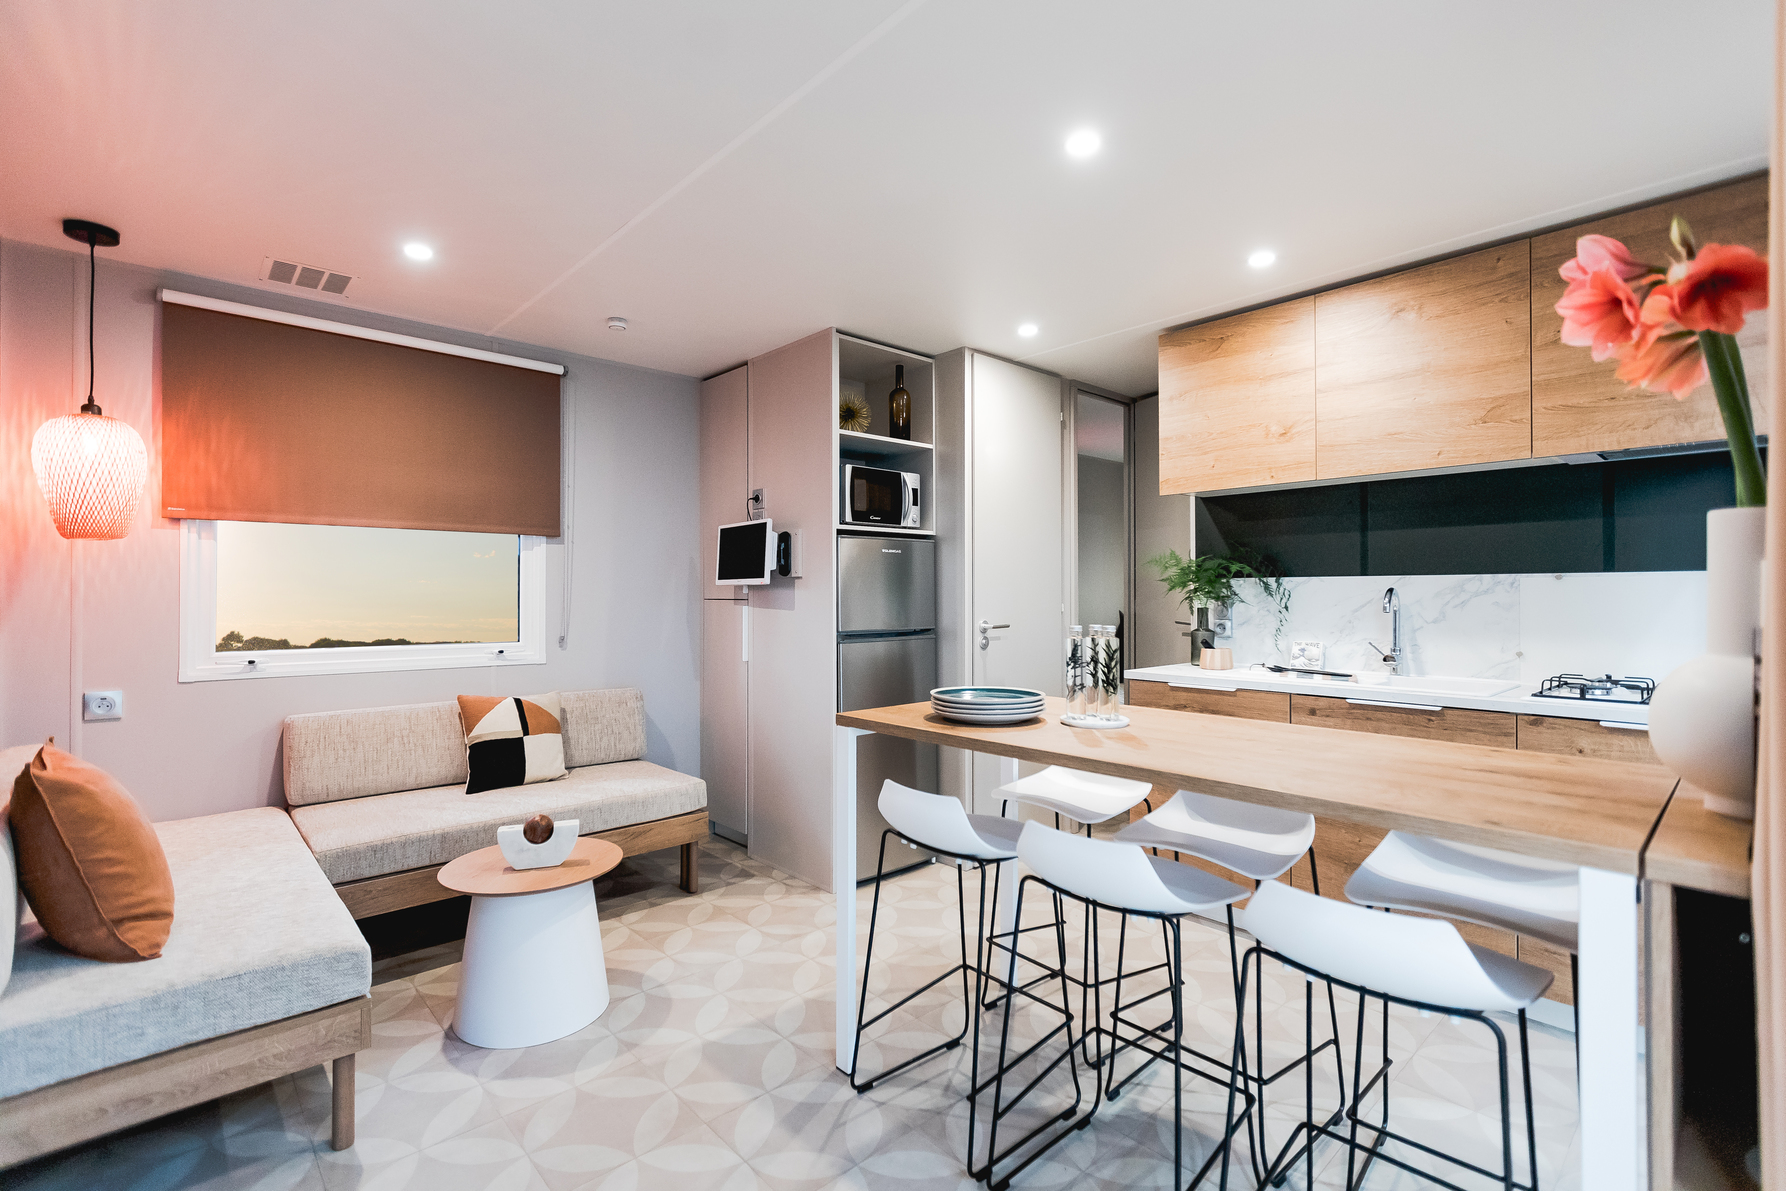 Location - Mobile-Home Premium 33M² (3 Chambres) + Terrasse + Tv + Clim - Camping Vitamin